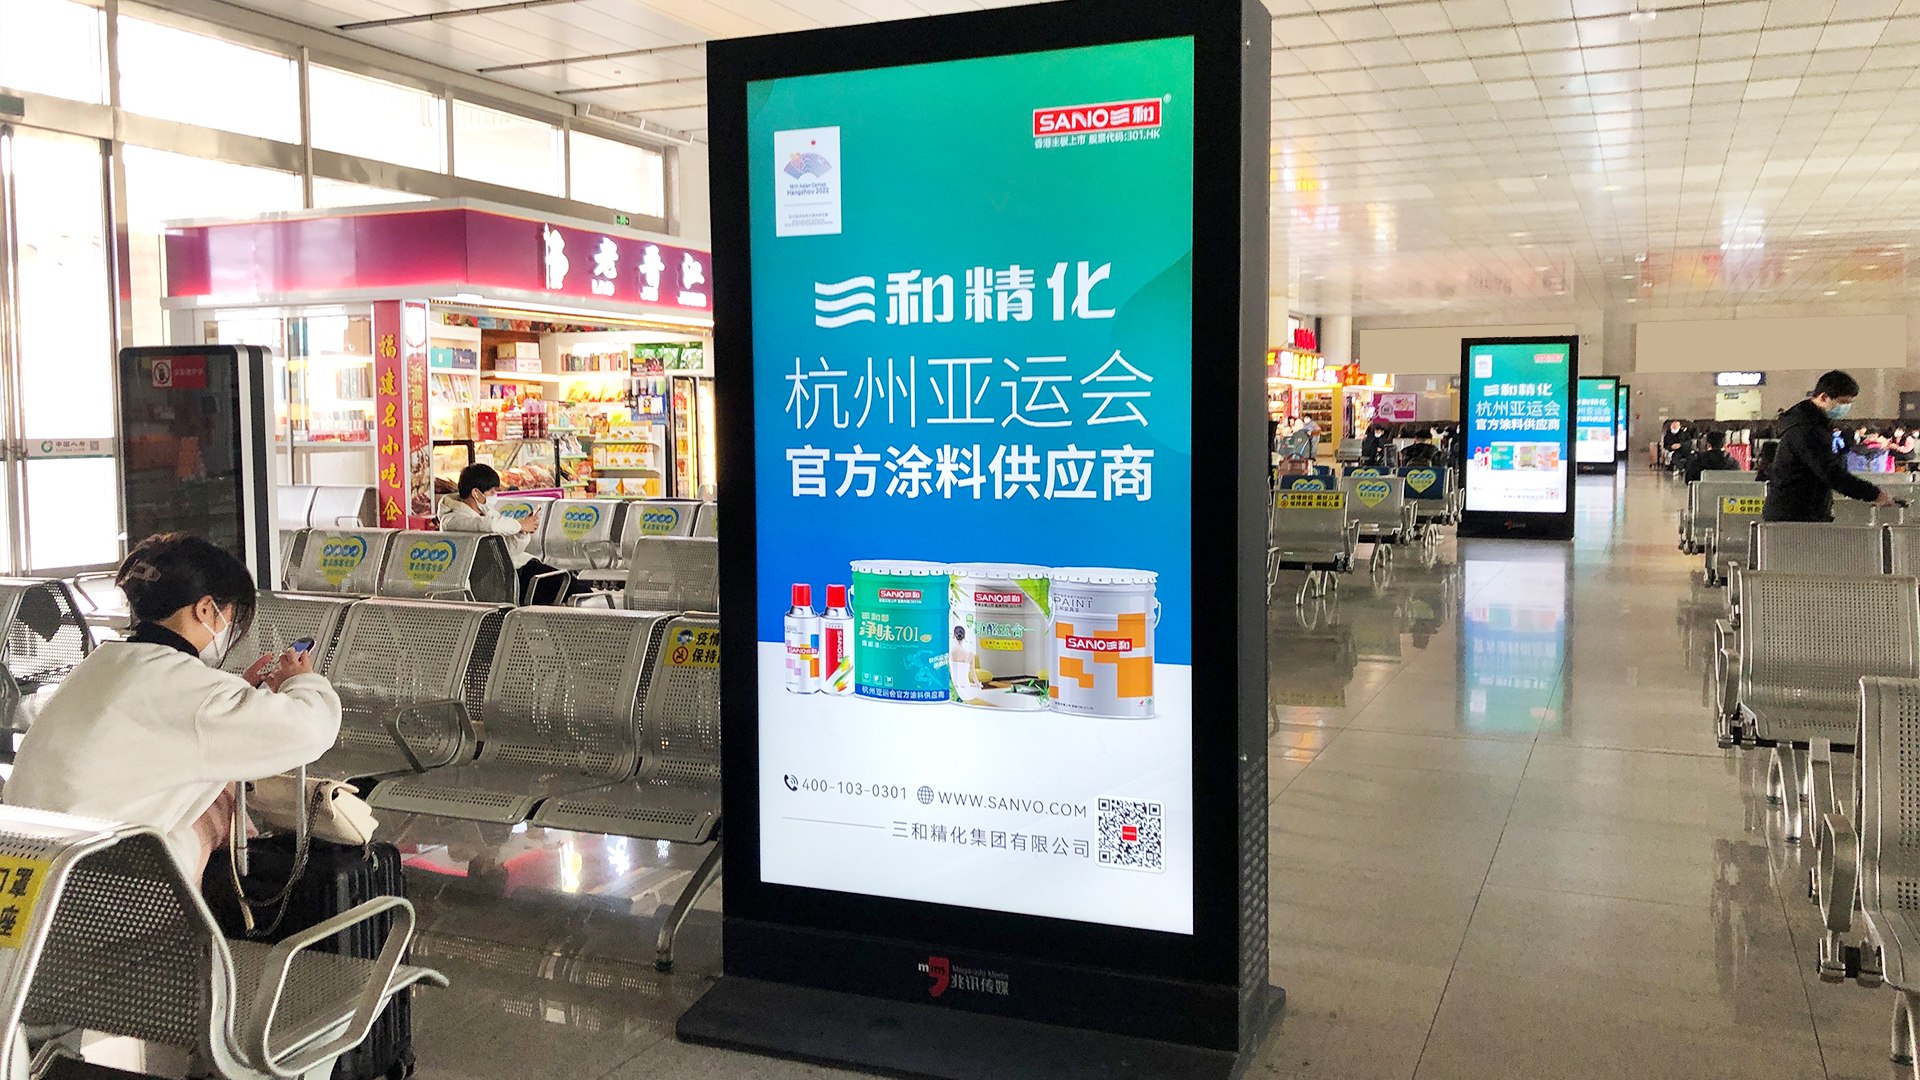 晋江站候车室独立刷屏机广告